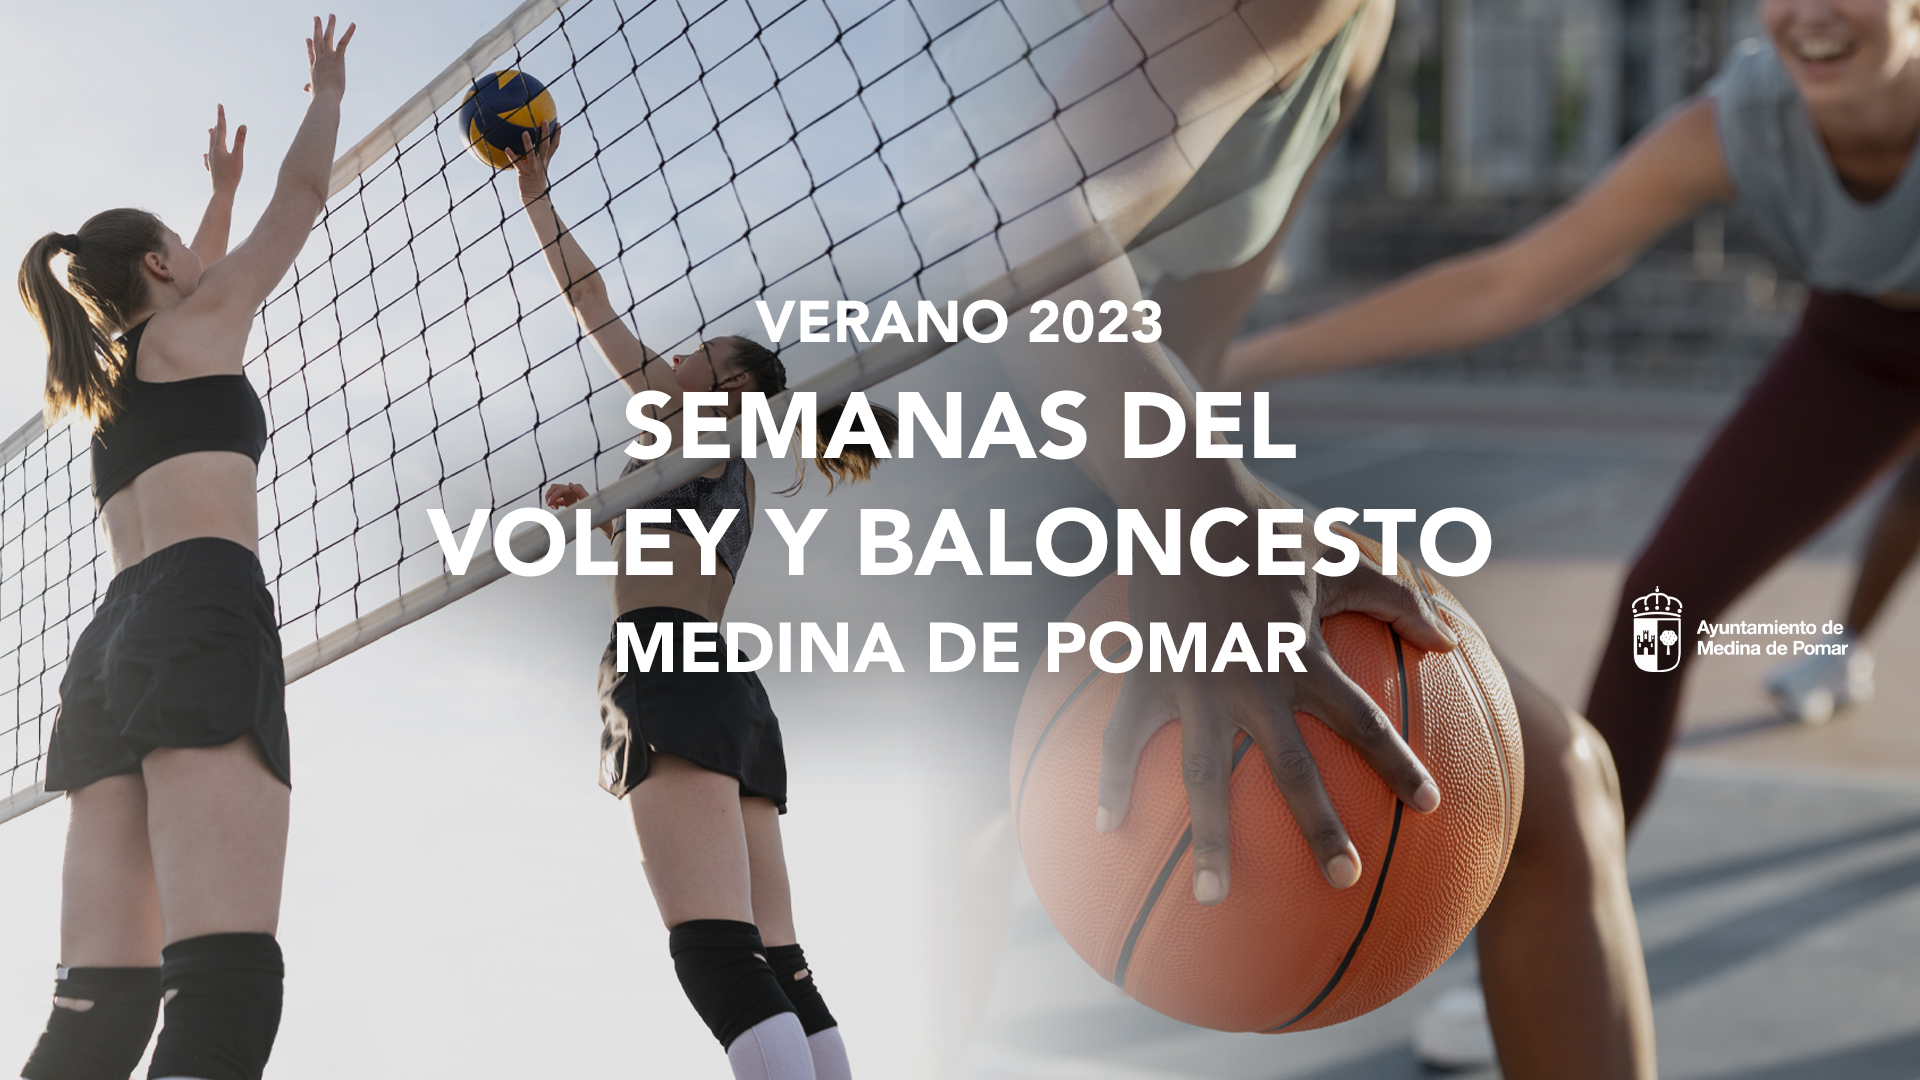 Semanas del vóley y el baloncesto (Verano 2023)